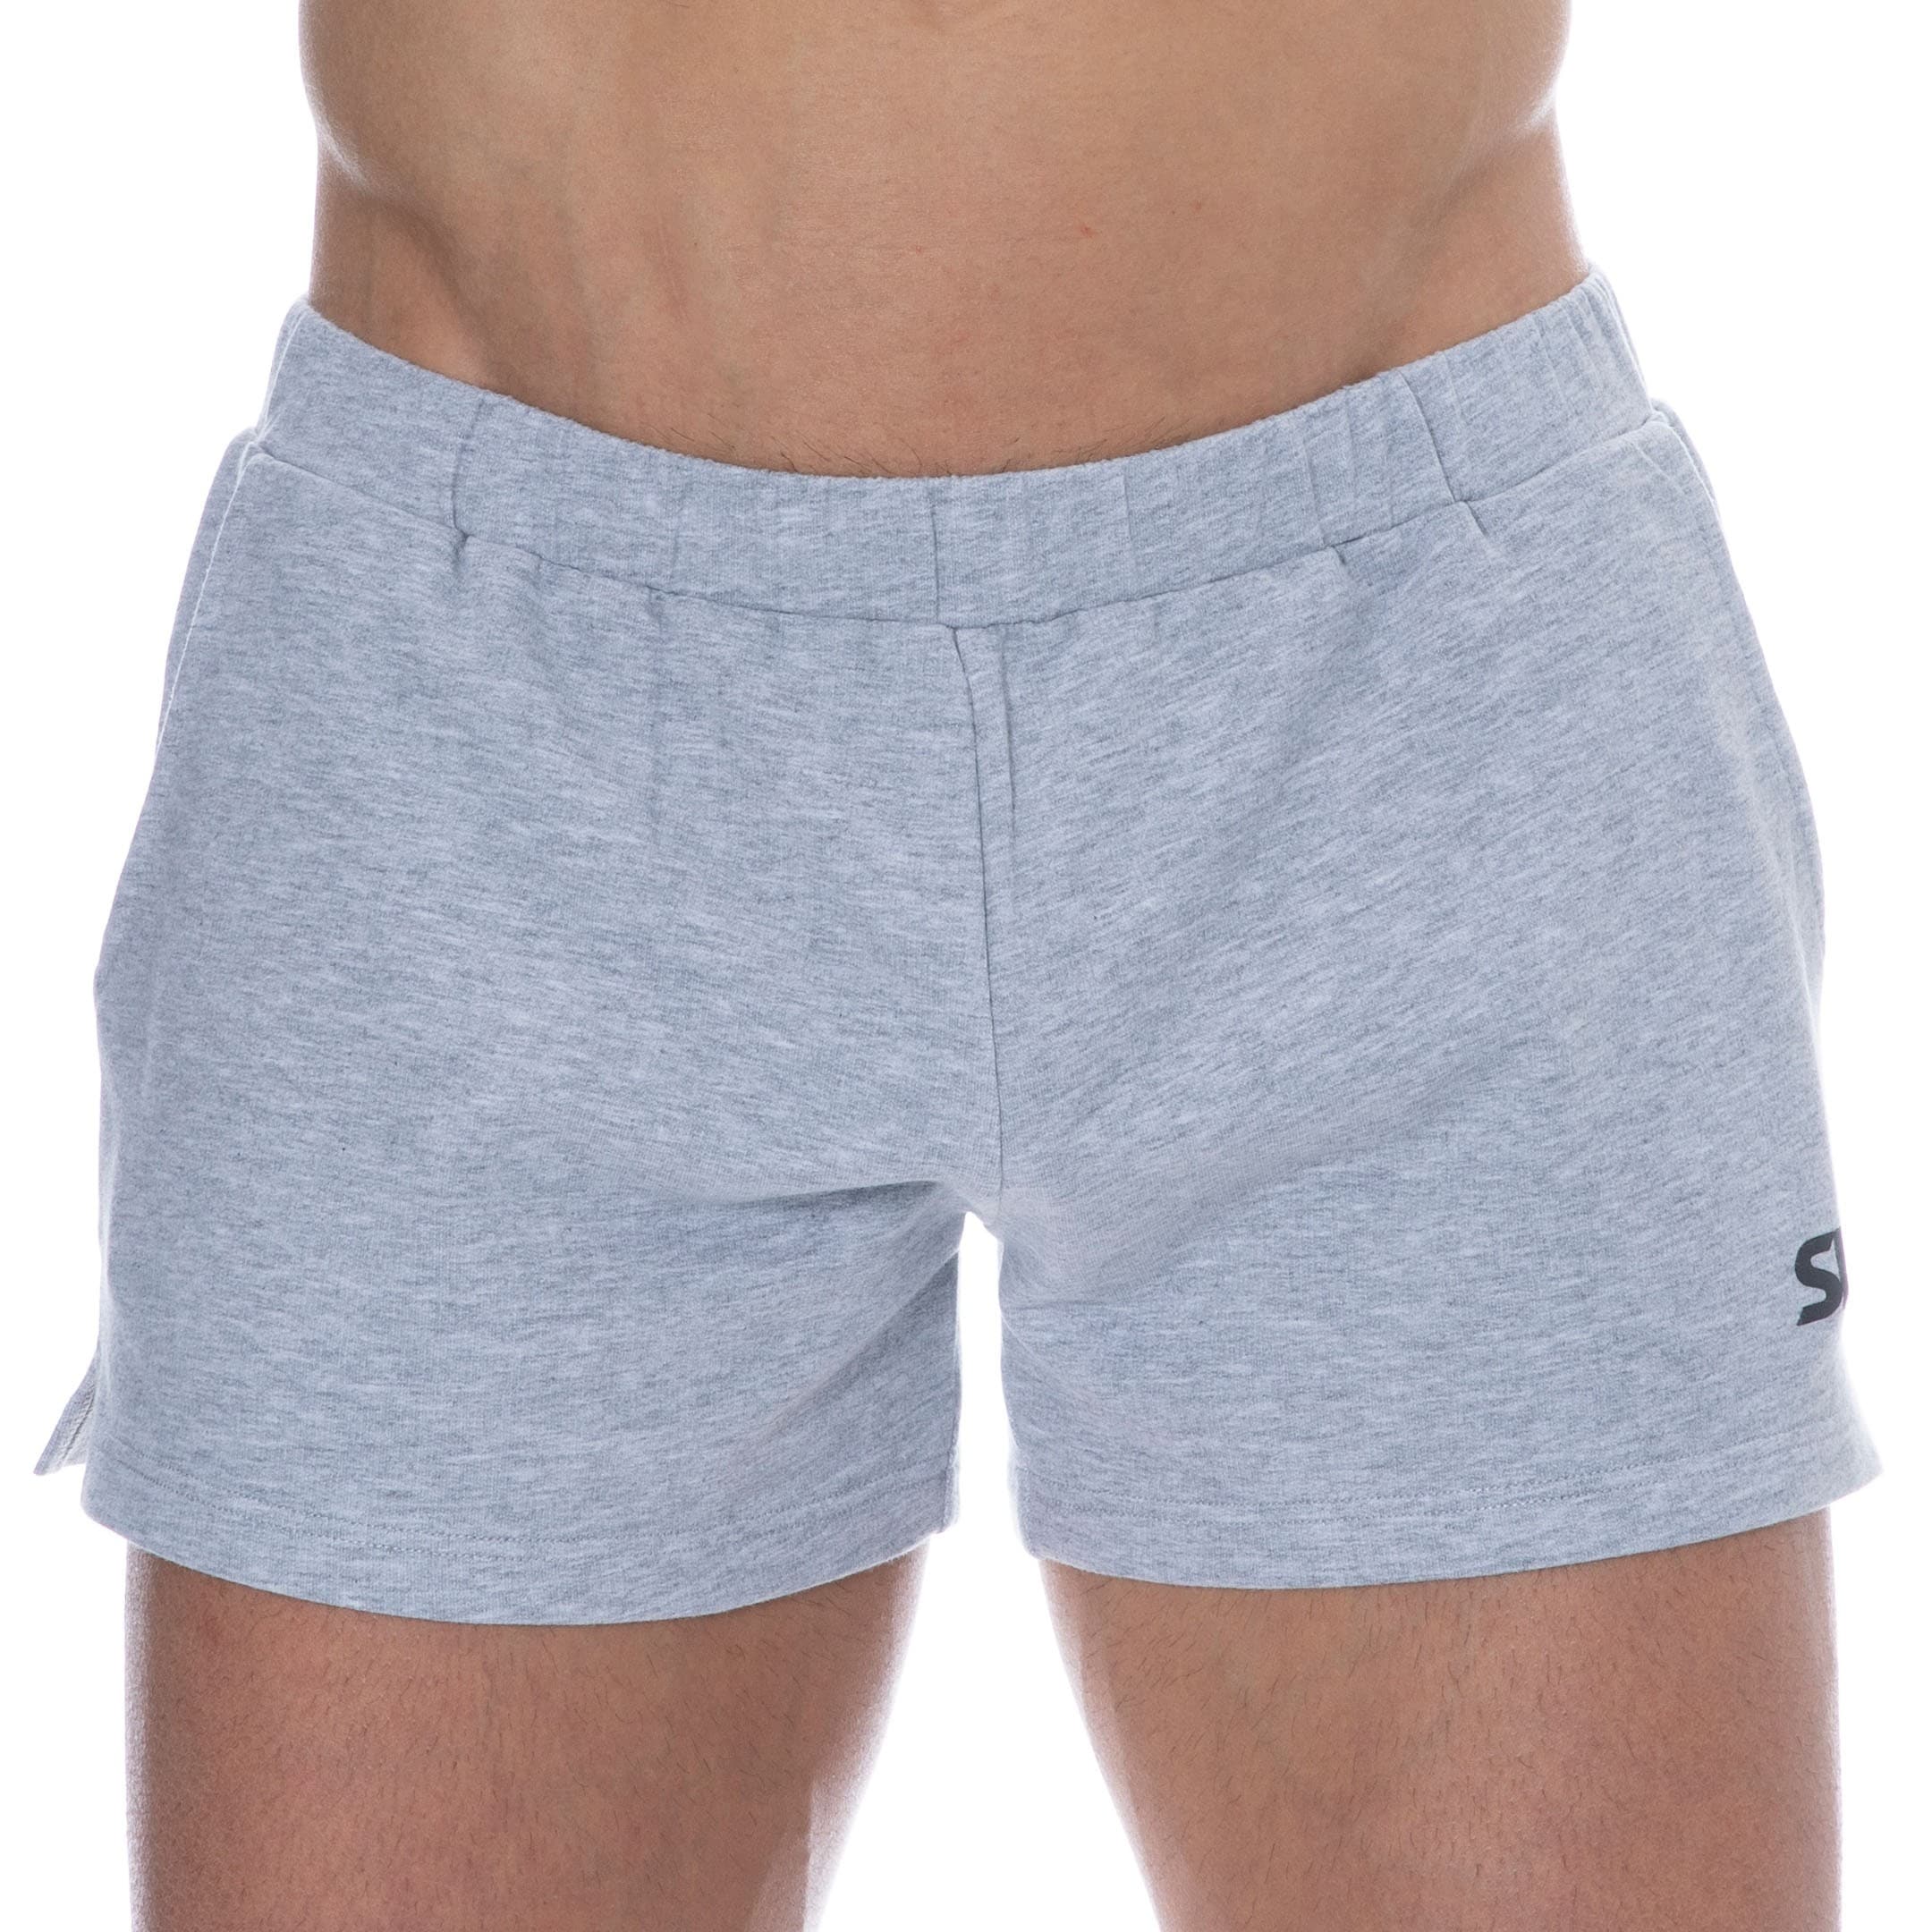 https://www.inderwear.com/144317/cotton-sport-shorts-heather-grey-sku.jpg